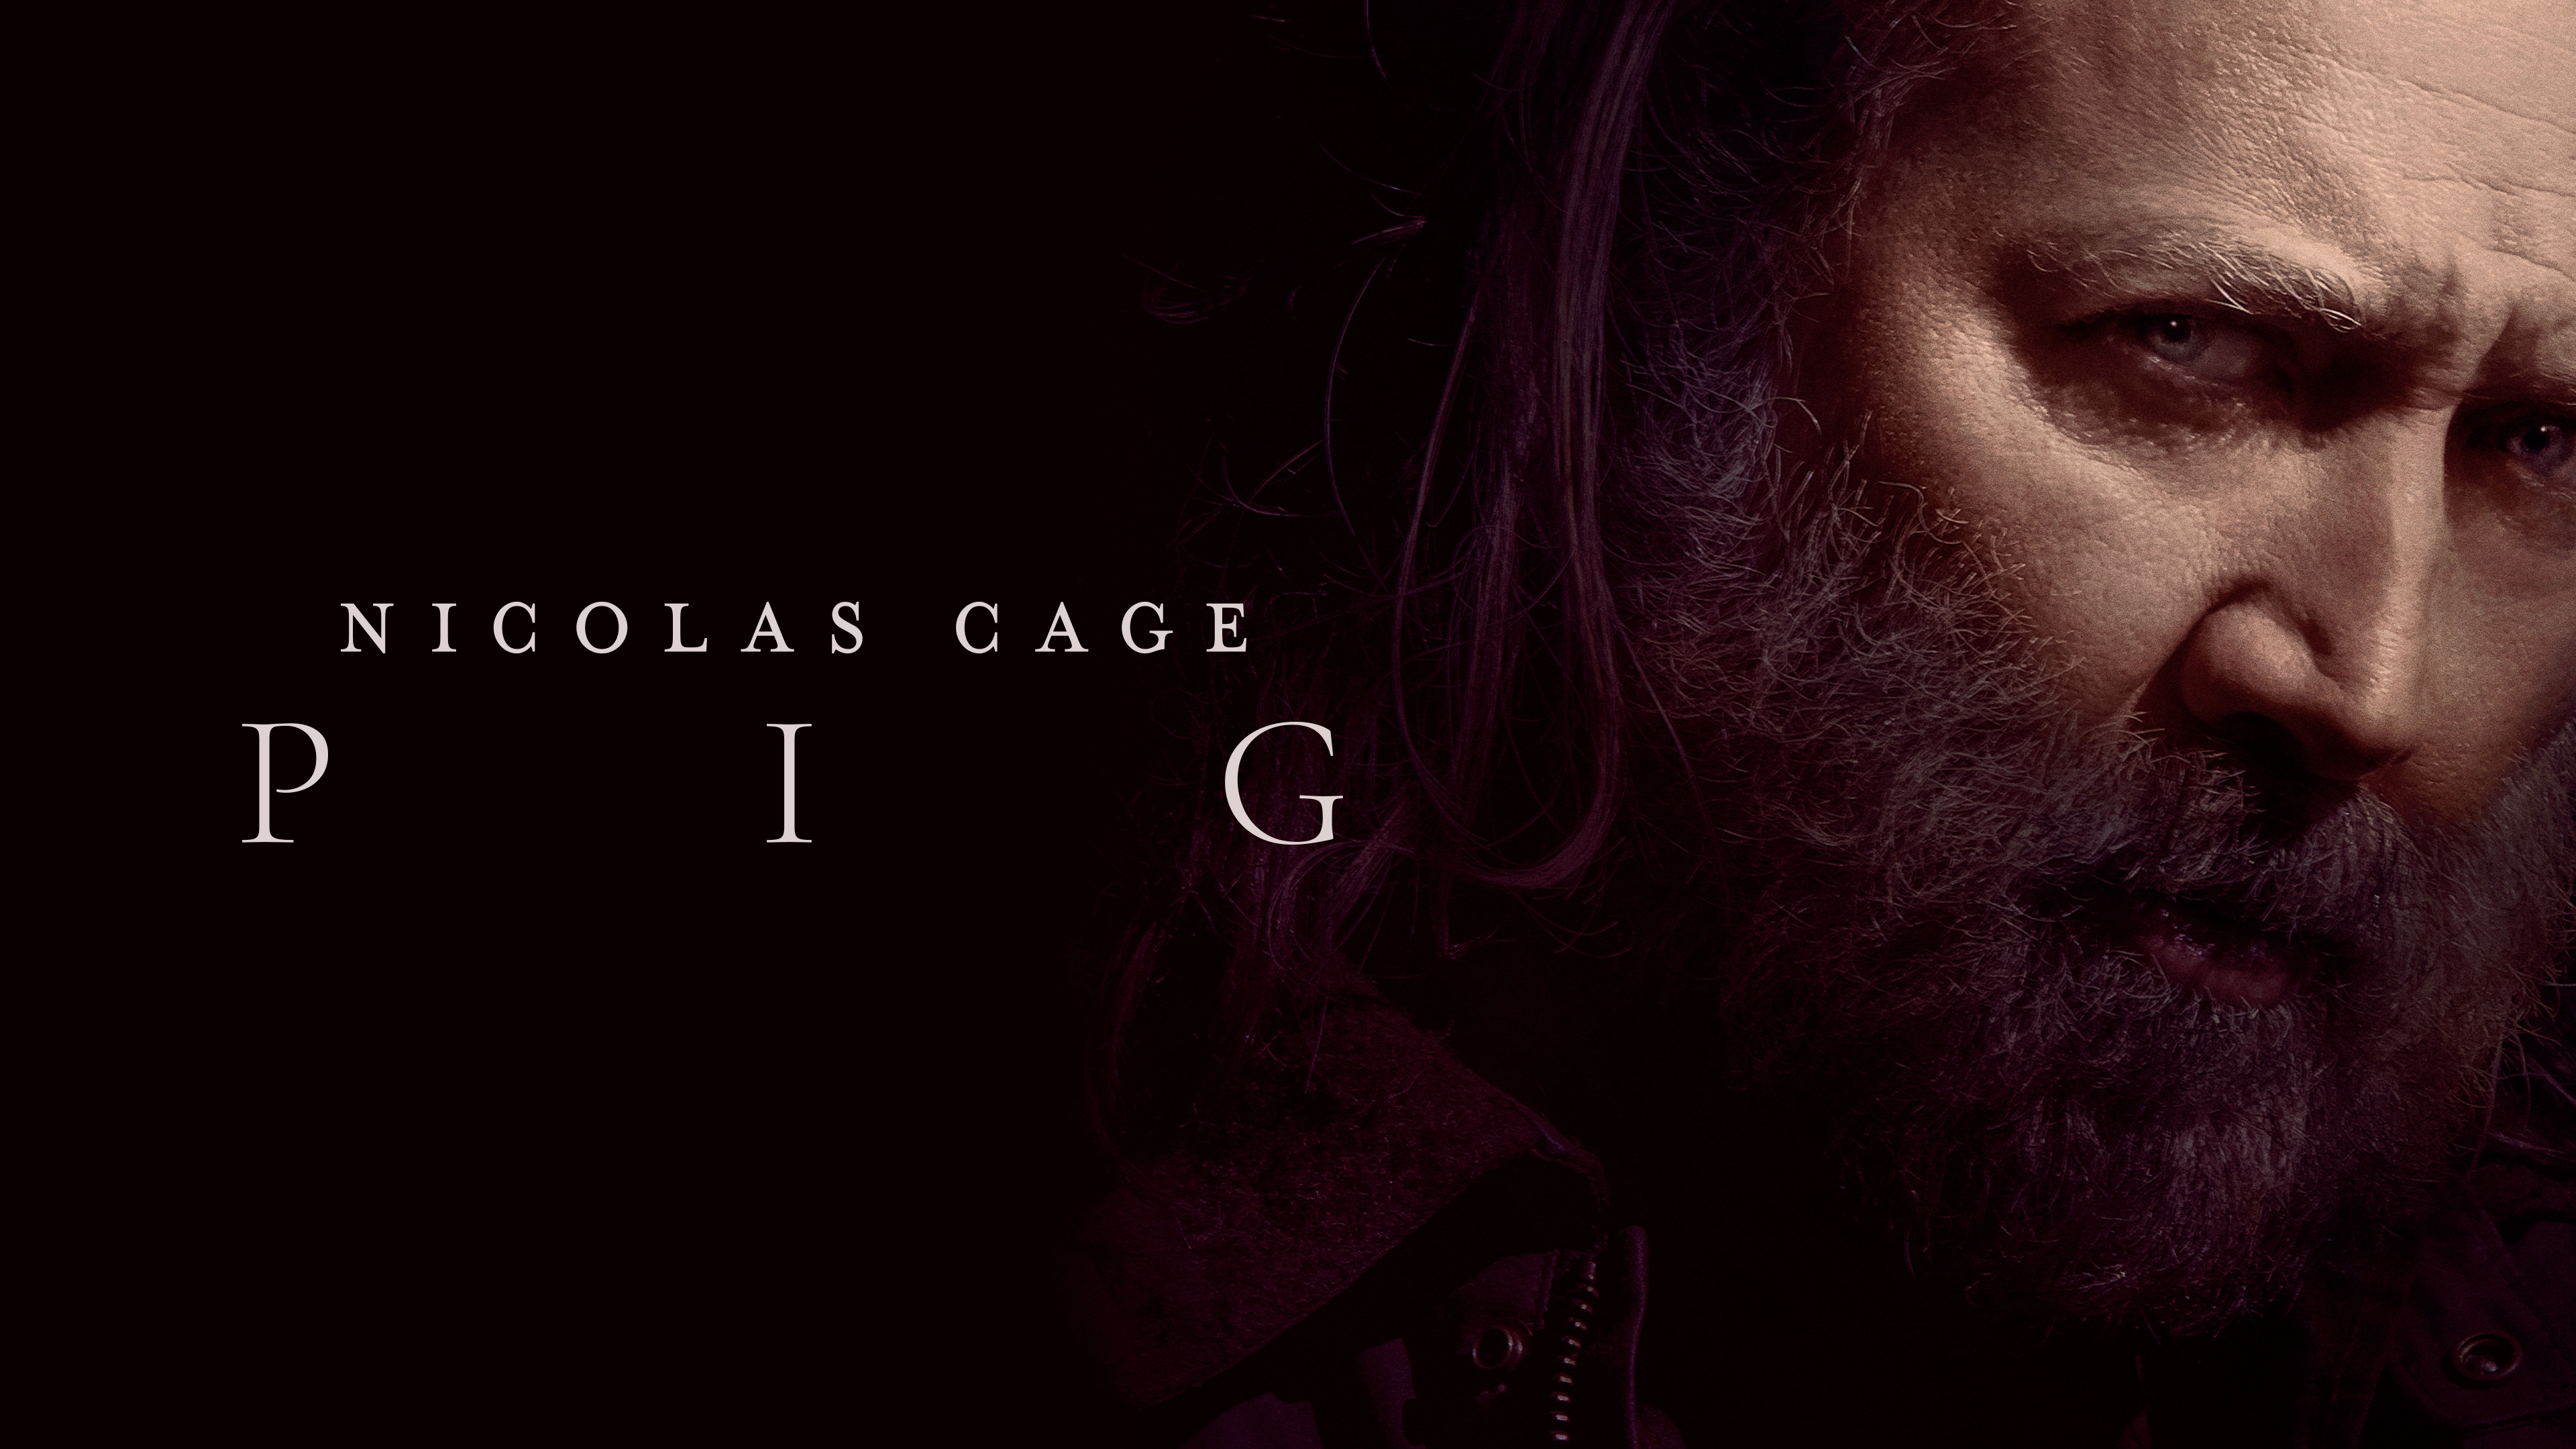 HD wallpaper, Pig, Nicolas Cage, 2021 Movies